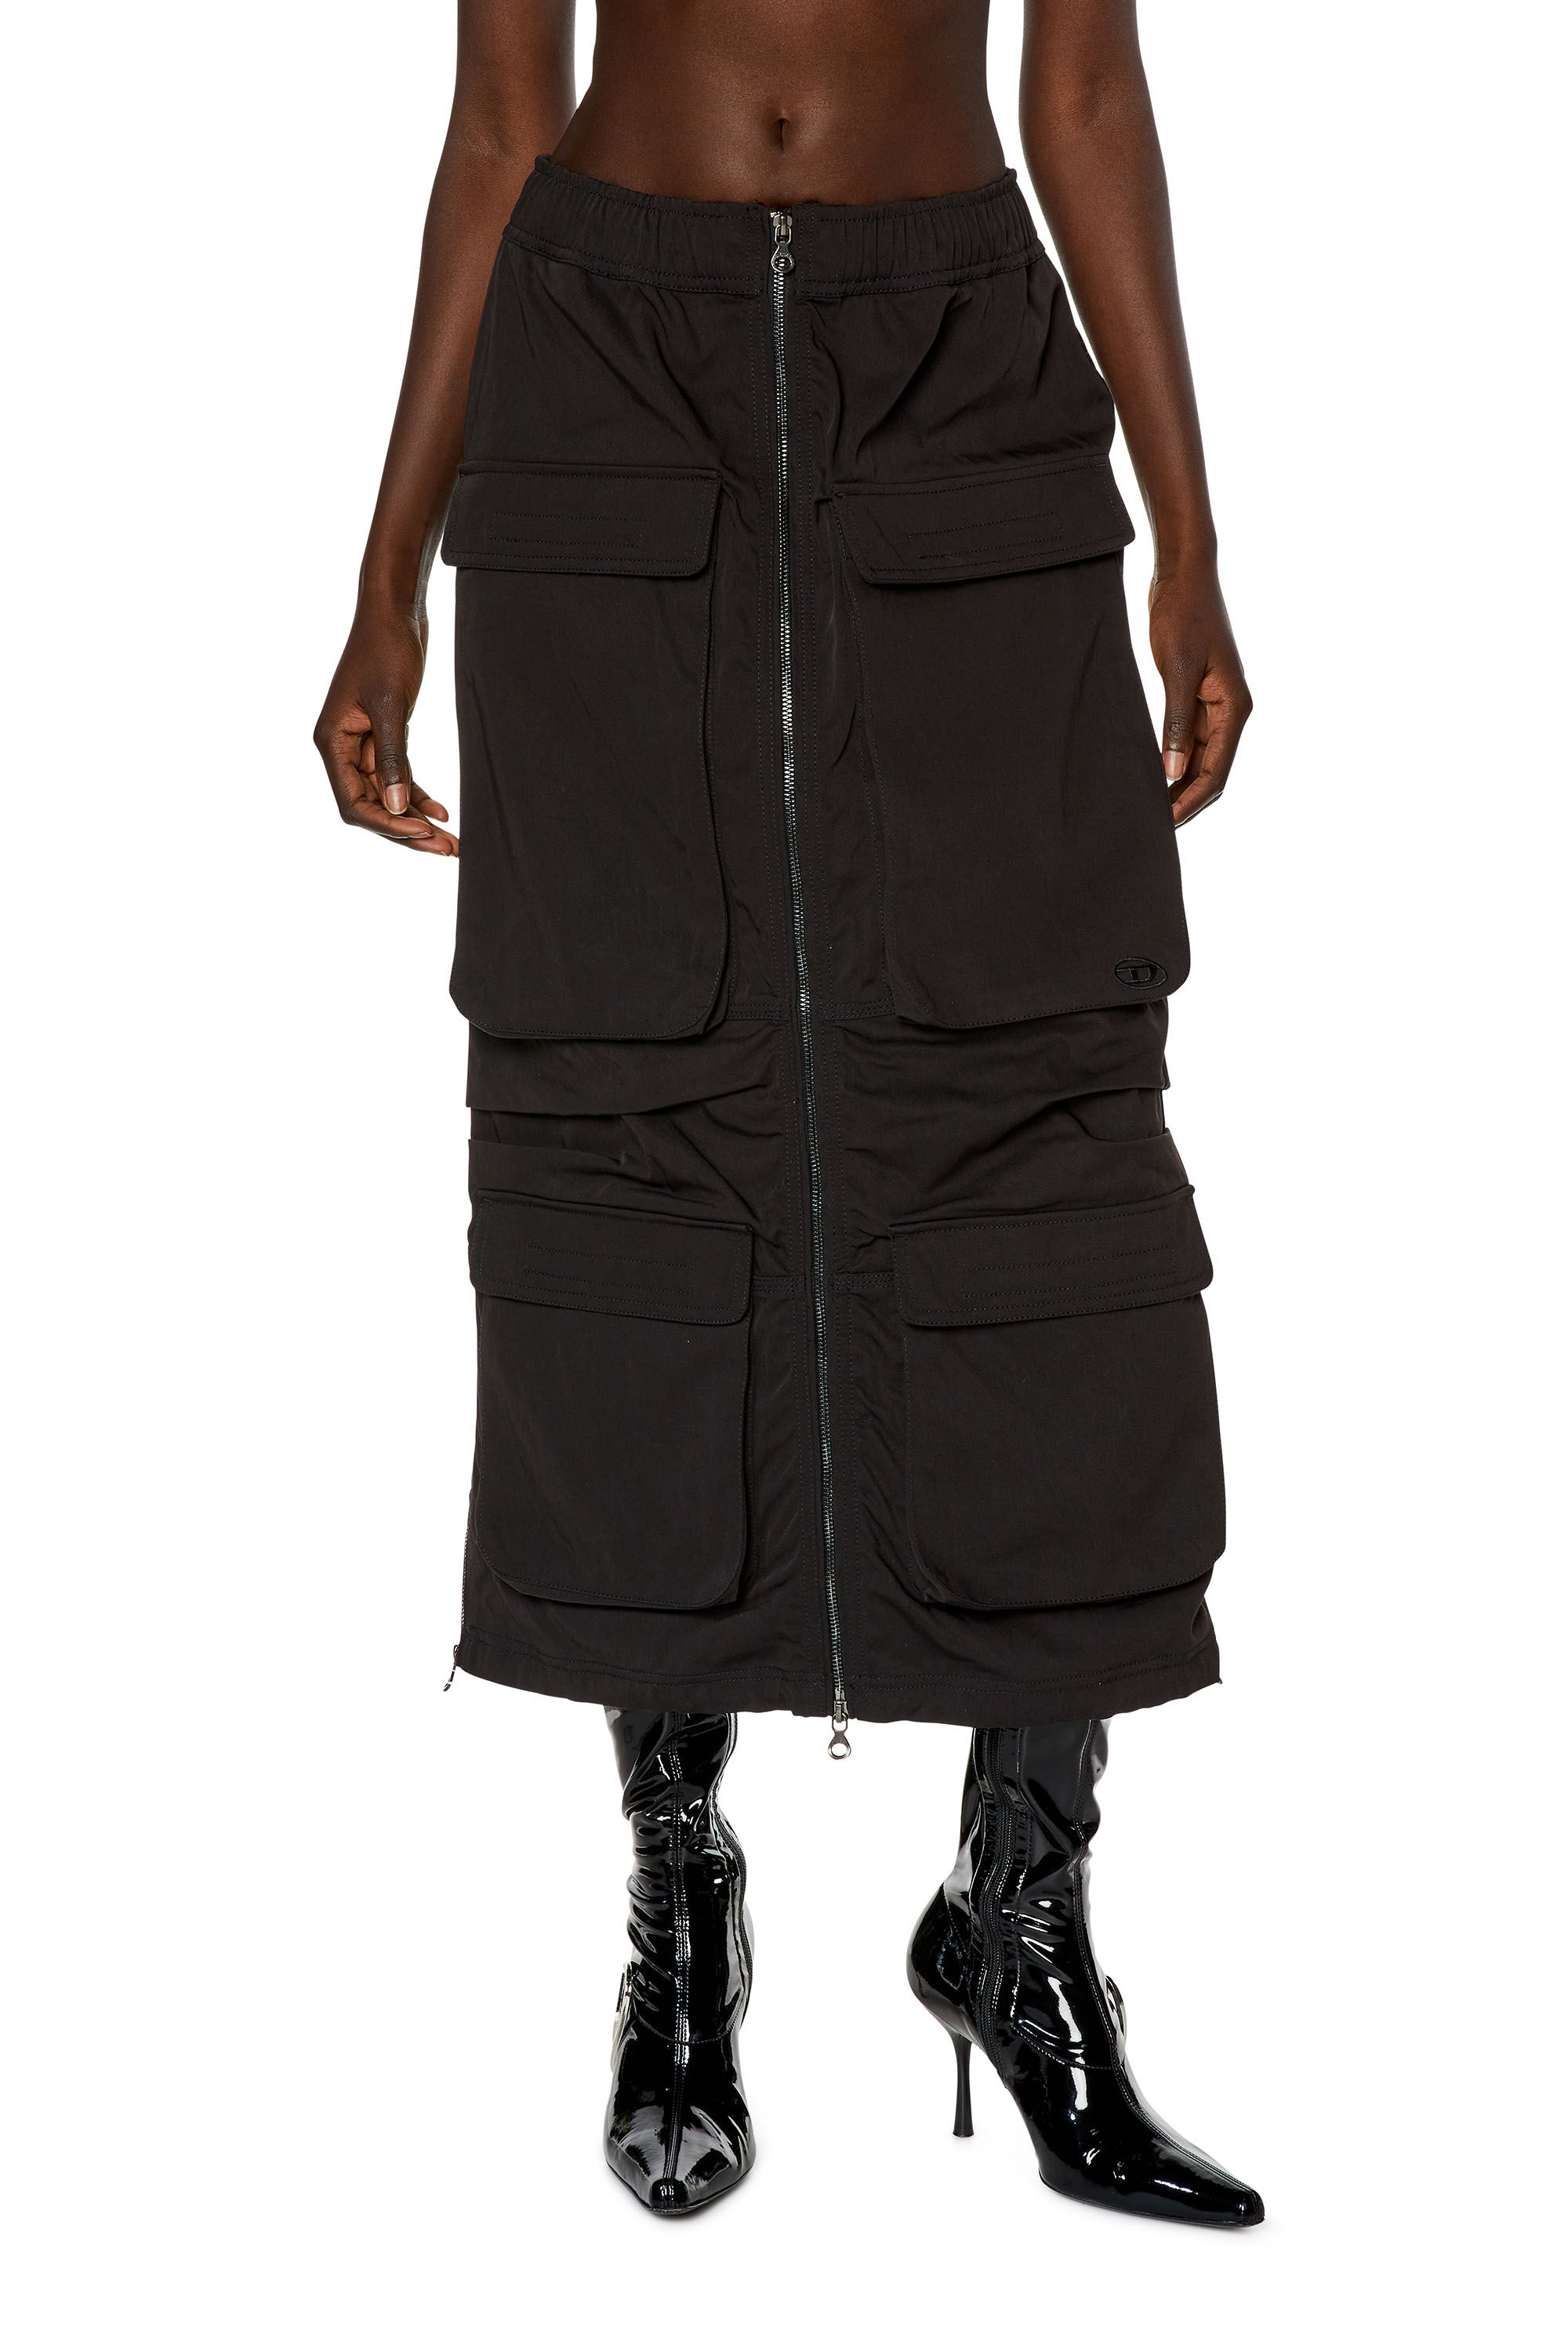 Women's Cargo skirt in nylon twill | Black | Diesel